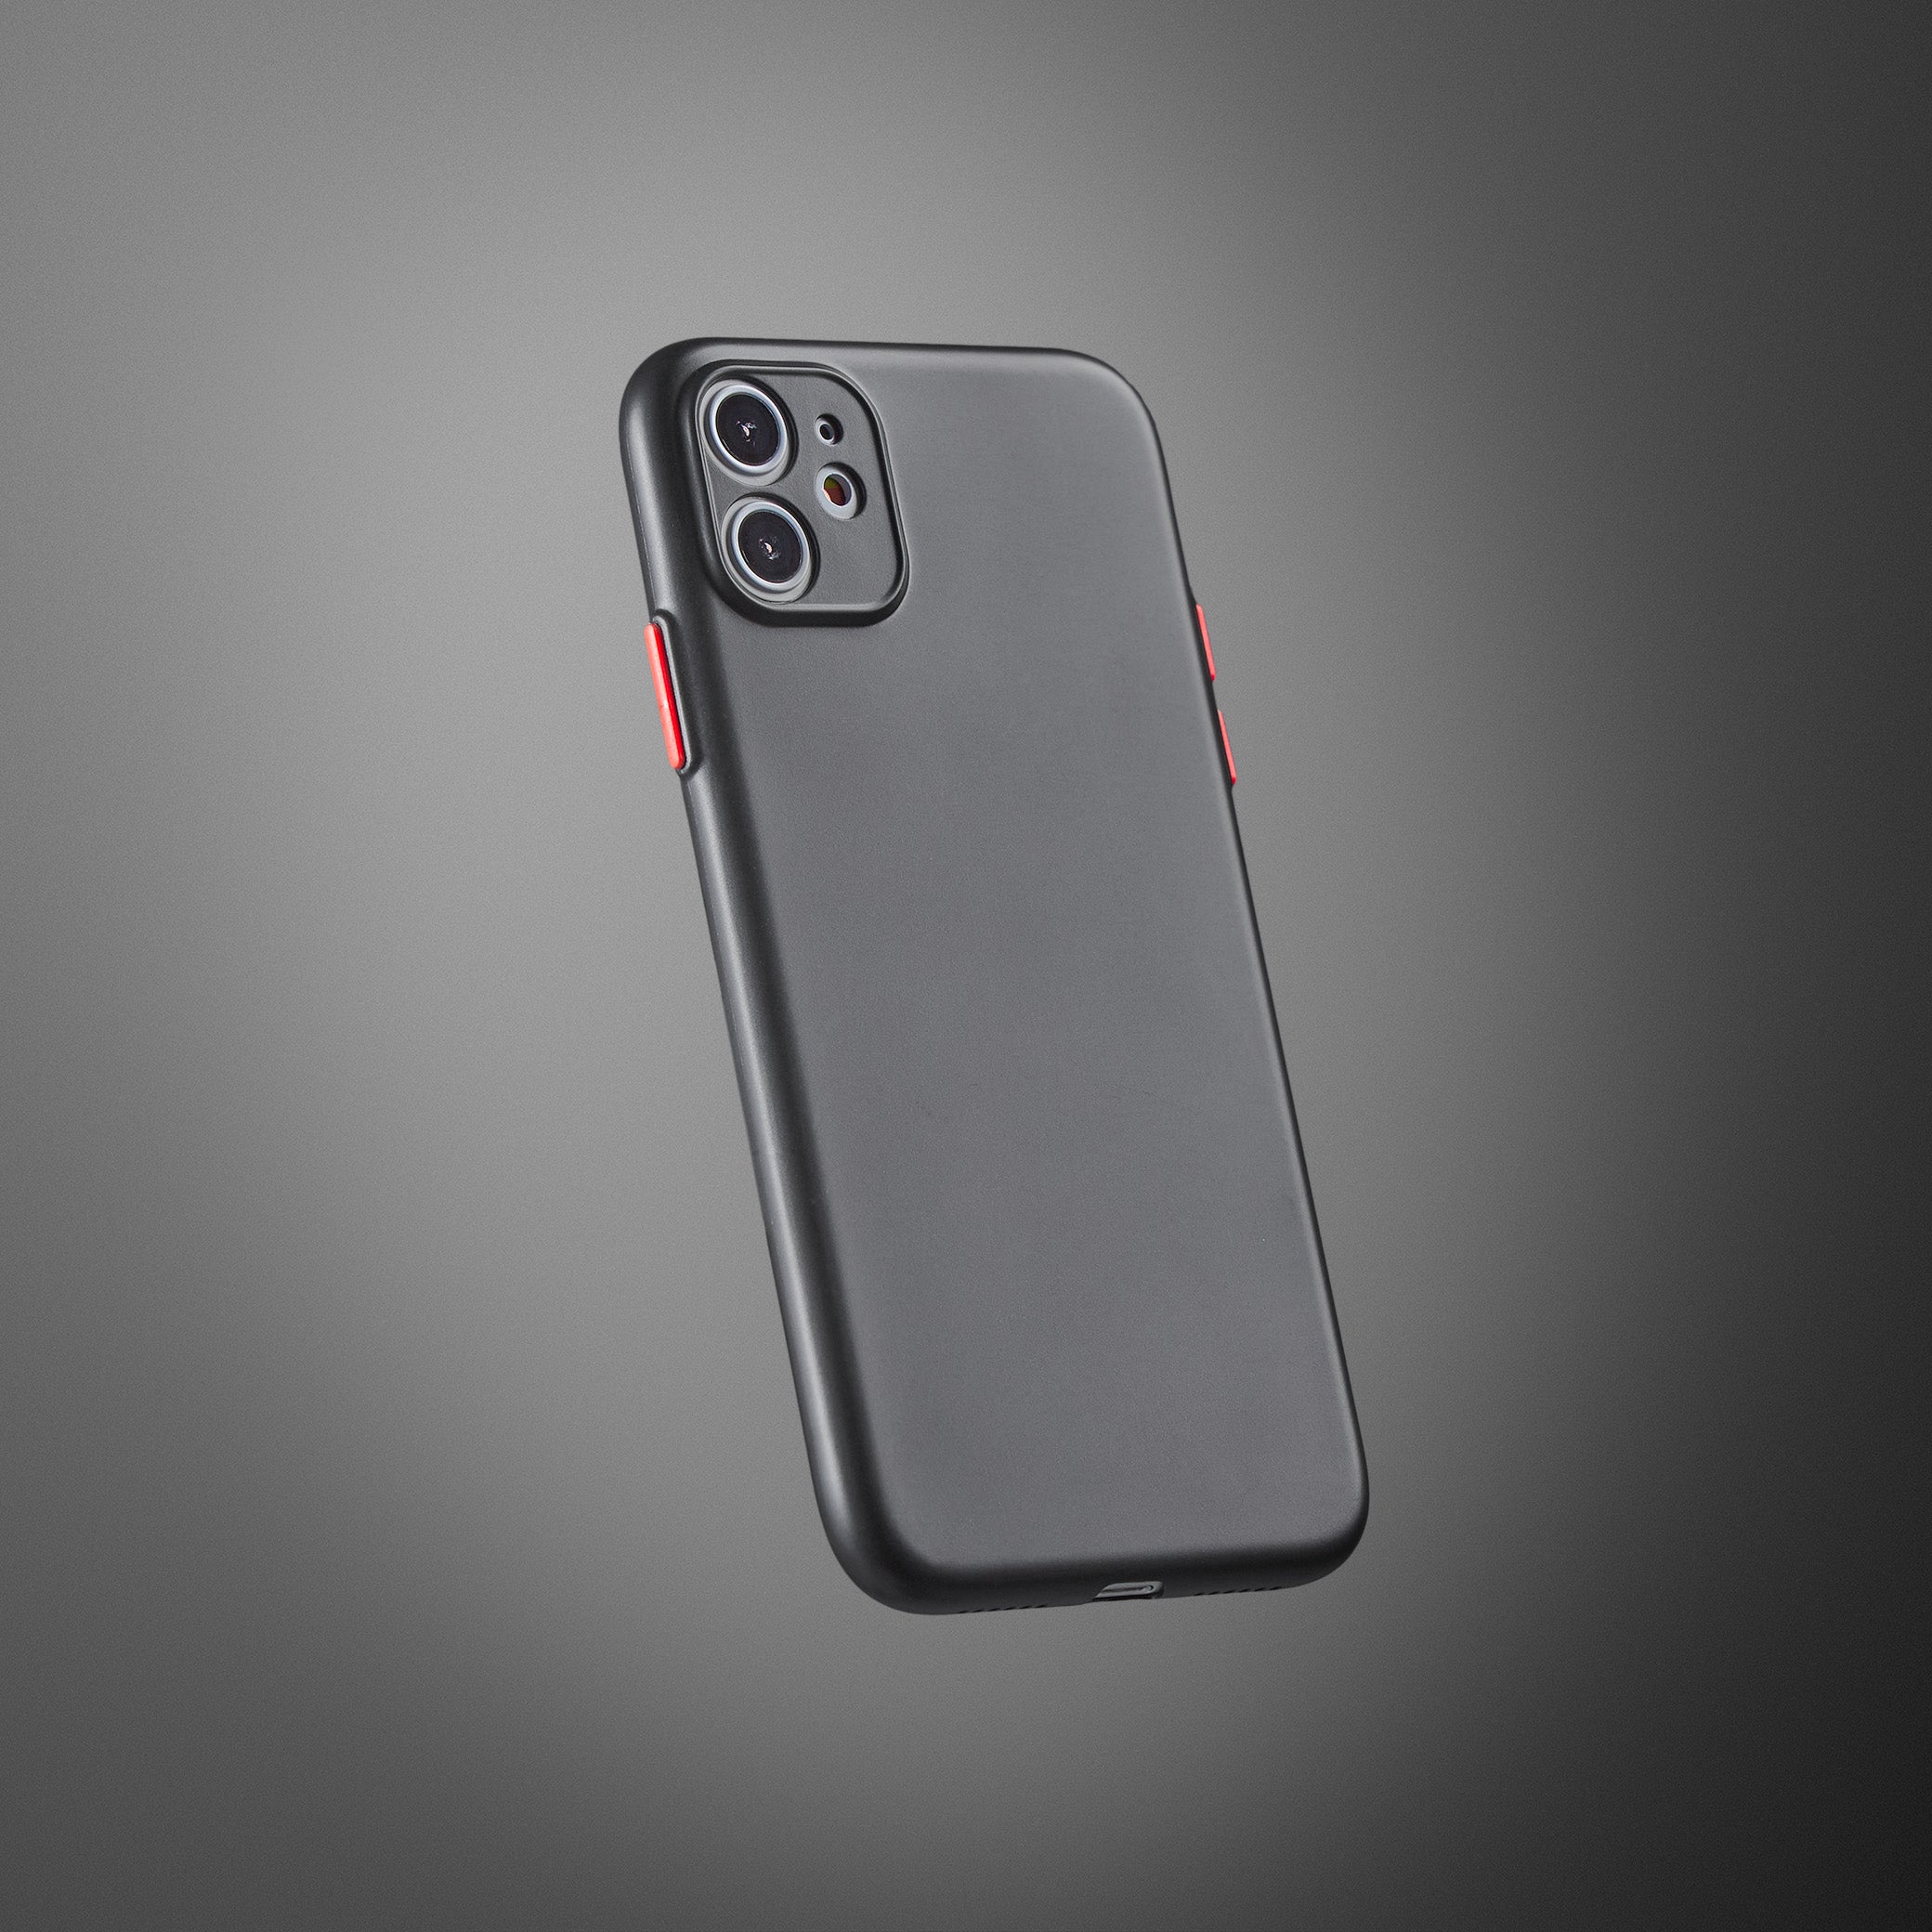 Super Slim Case 2.0 for iPhone 11 - Opaque Black